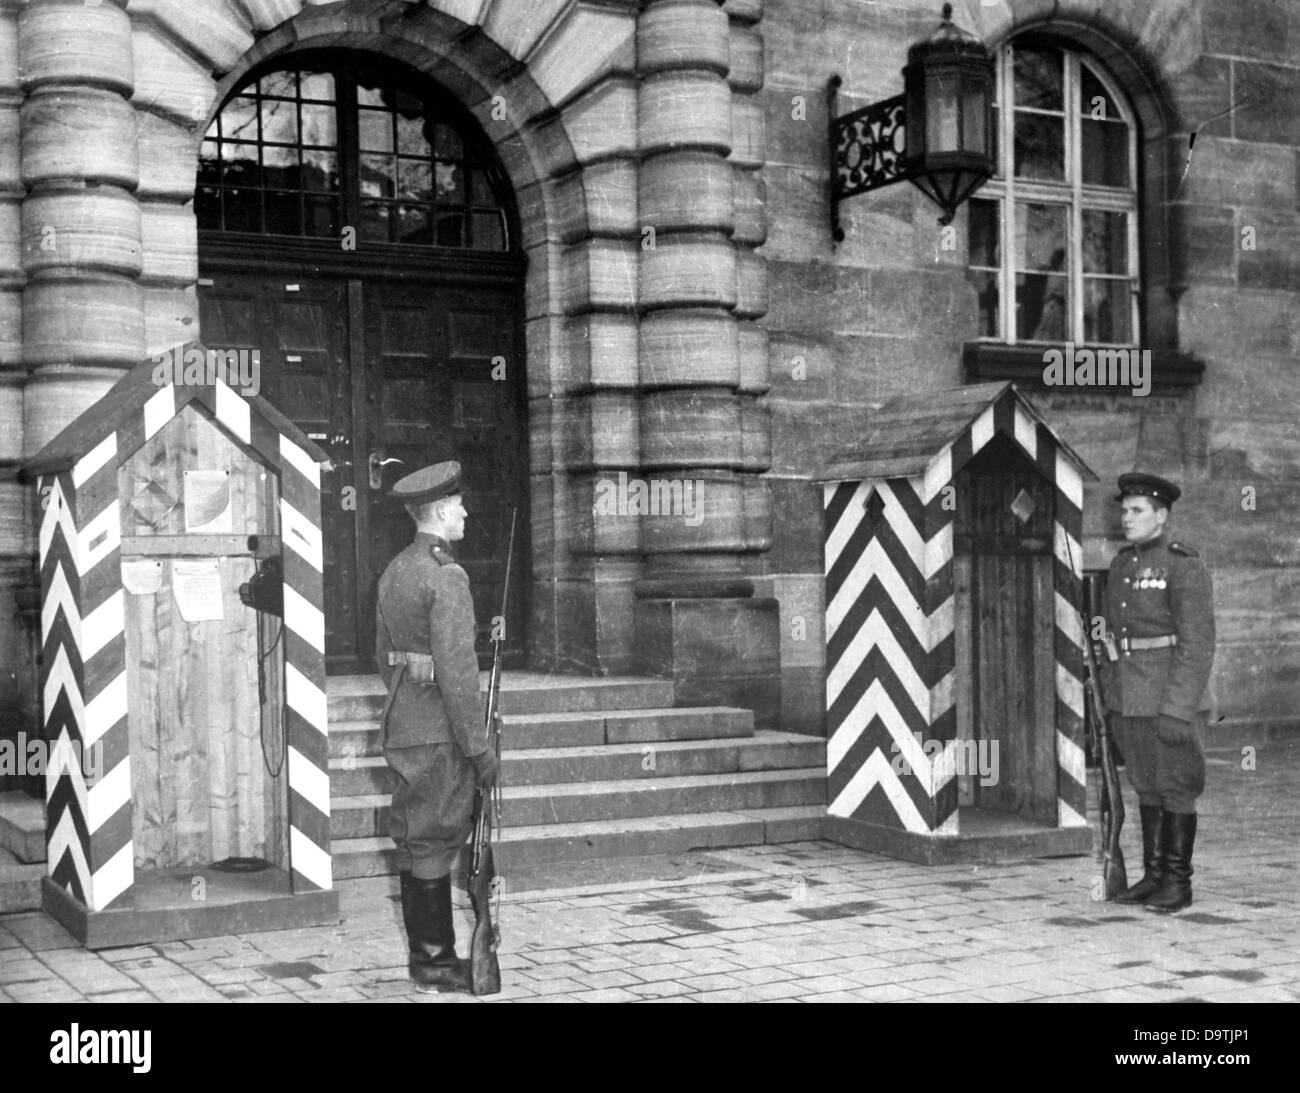 Zwei sowjetische Soldaten bewachen den Eingang des Justizpalastes Nürnberg während der Anhörungen der Nürnberger Prozesse im Zusammenhang mit dem Internationalen Militärgerichtshof gegen die großen Kriegsverbrecher des zweiten Weltkriegs in Nürnberg, 1946. Foto: Jewgeni Chaldei Stockfoto